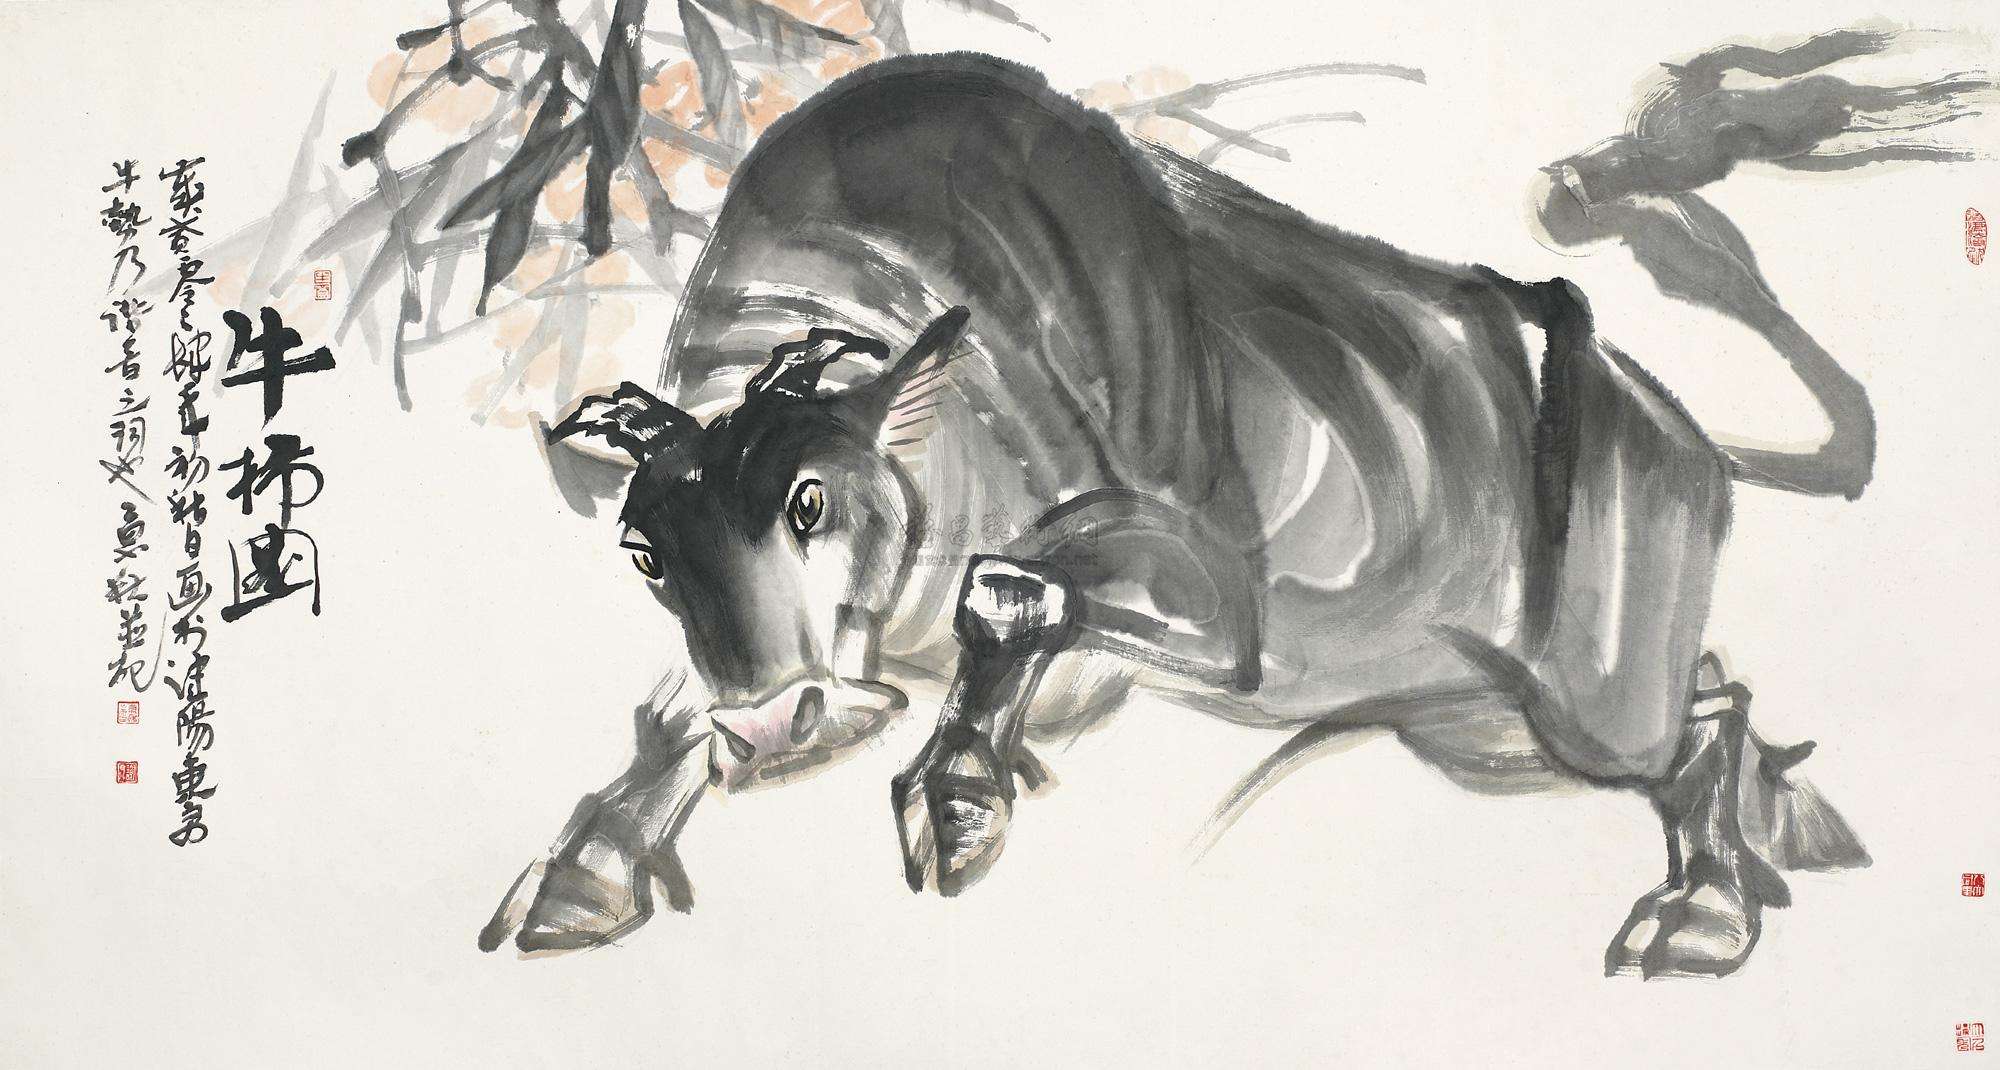 生肖纹身大全：属牛的人纹身什么好？21幅图案推荐 - 广州纹彩刺青